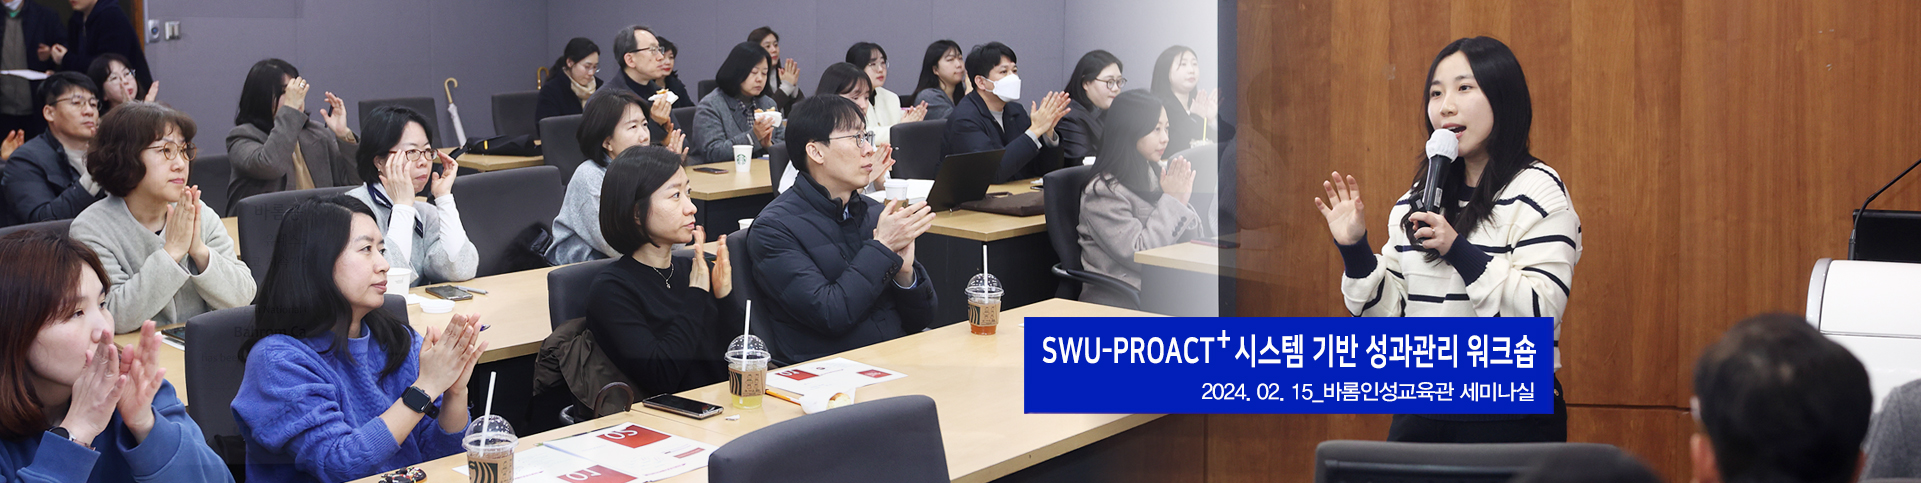 SWU-PROACT+ 시스템 기반 성과관리 워크숍